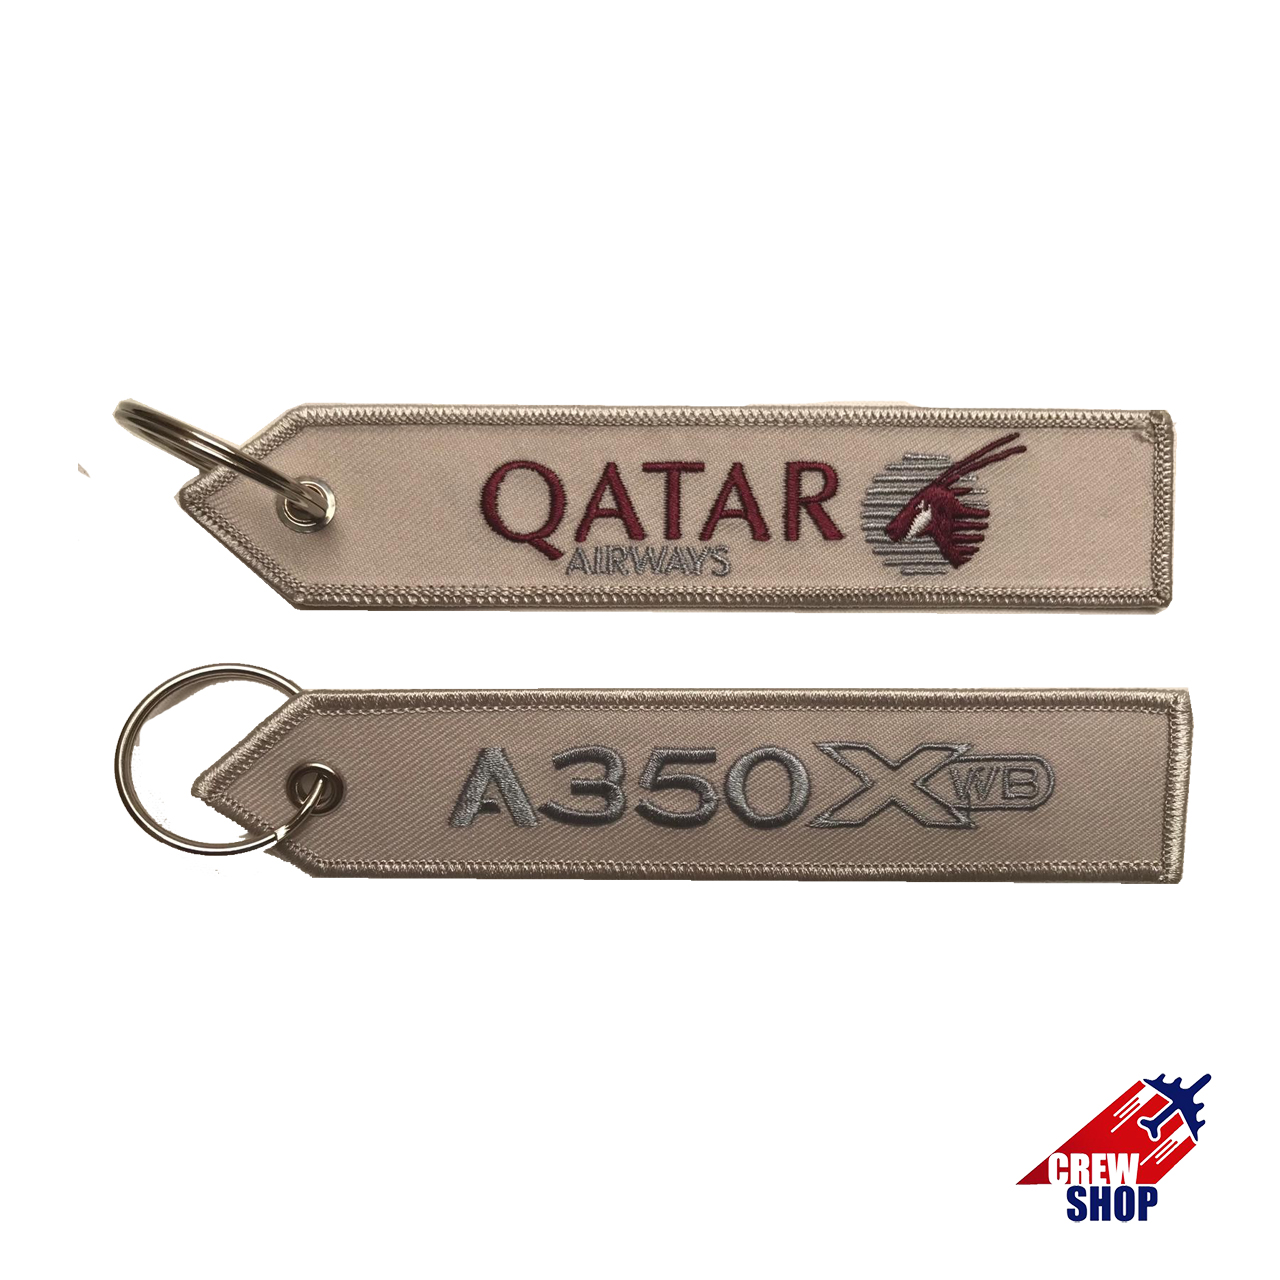 QATAR AIRWAYS-A350 XWB